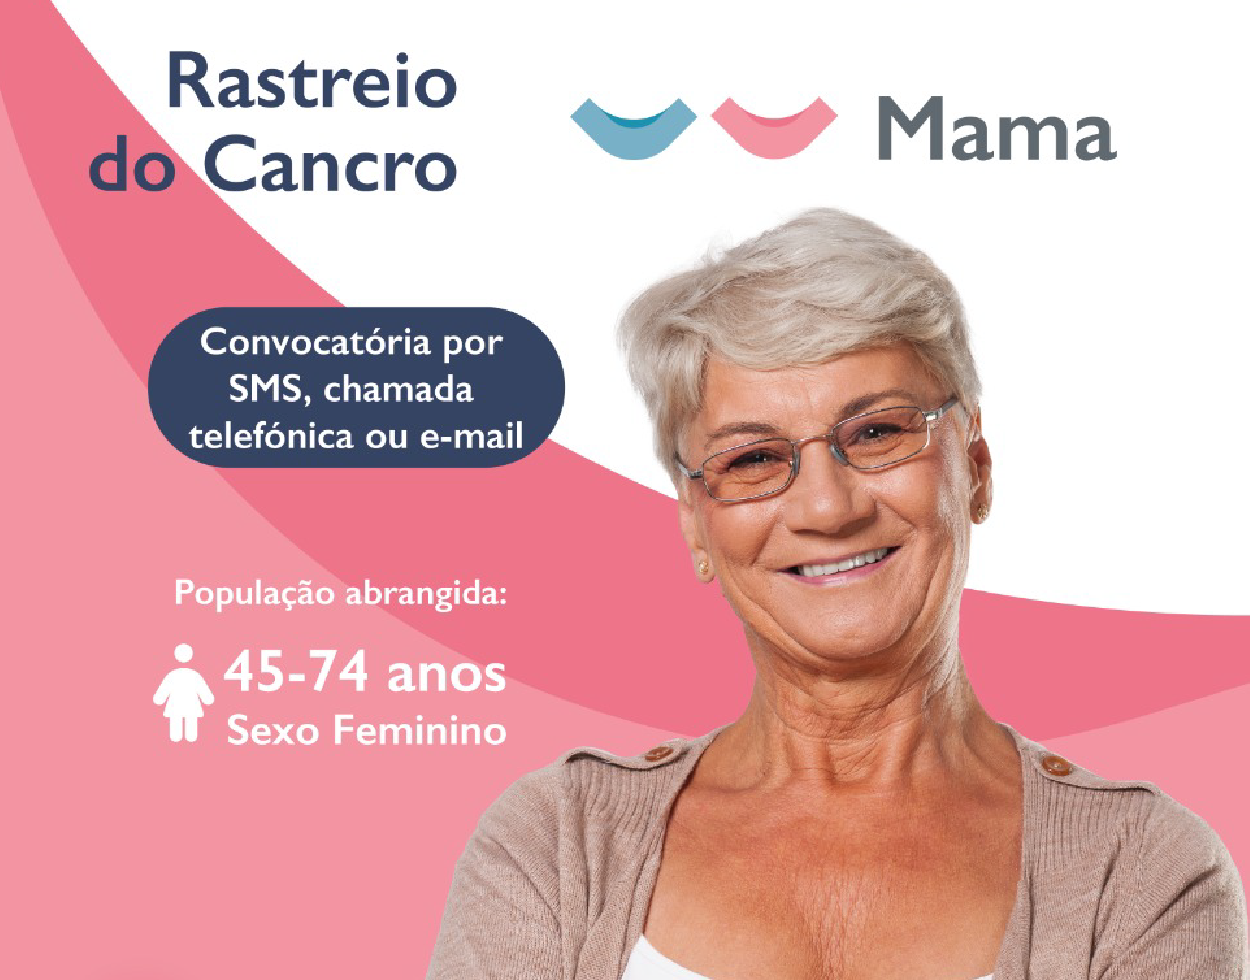 Rastreio do Cancro da Mama decorre no Funchal e em Machico